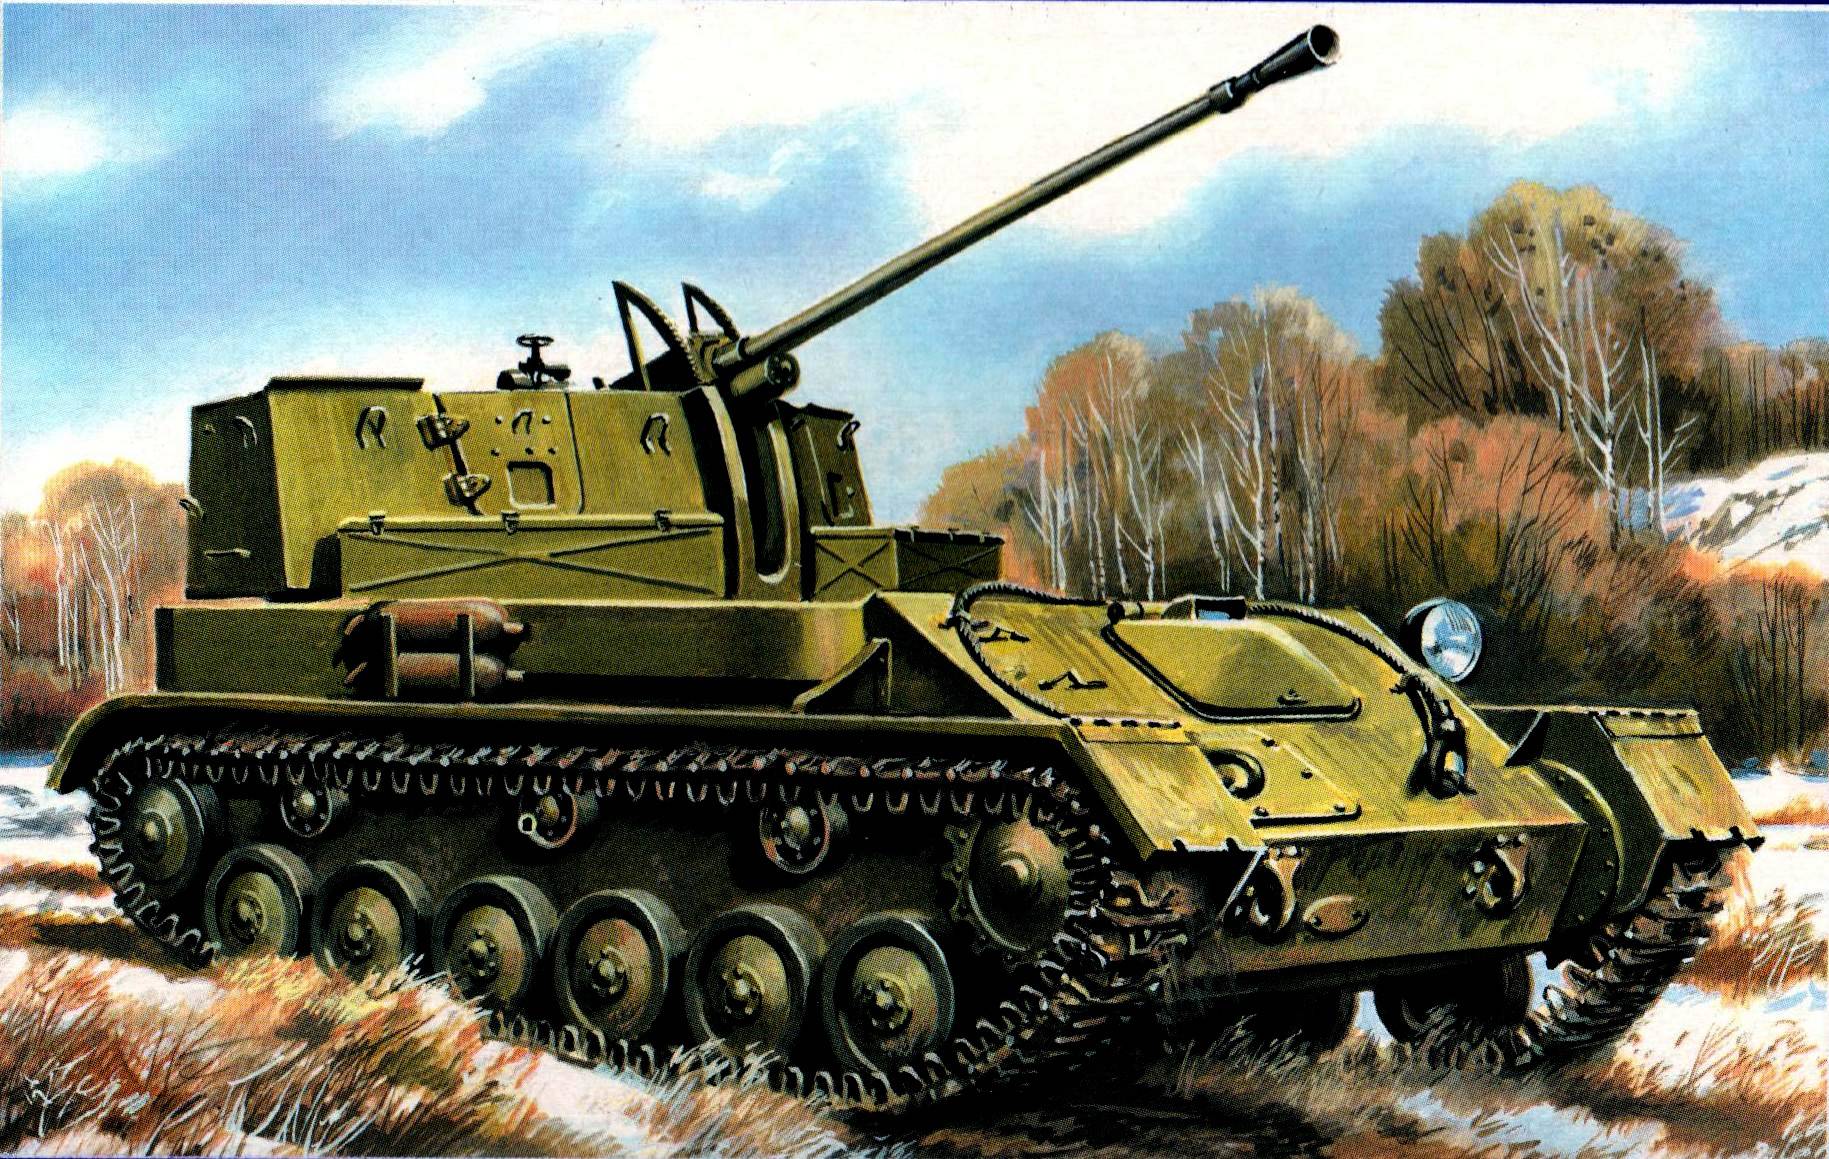 Zsu-37-2 - war thunder wiki